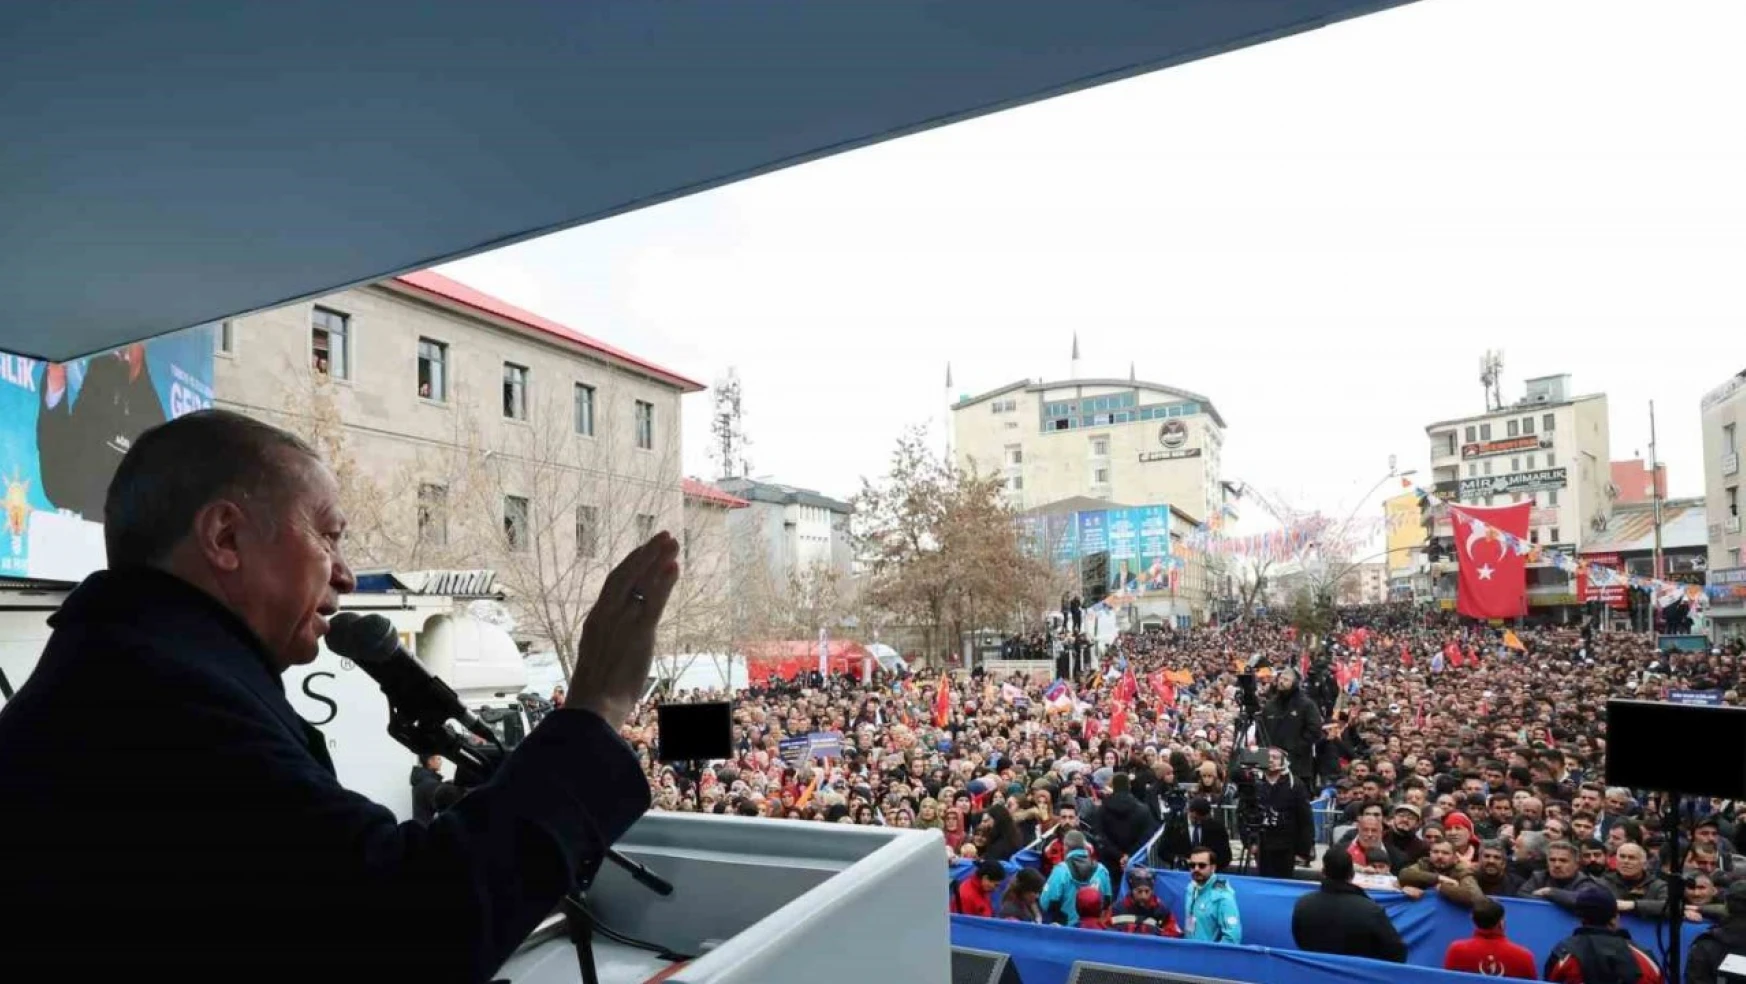 Cumhurbaşkanı Erdoğan, Ağrı mitinginde konuştu: 'Başka Ağrı yok, başka Türkiye yok'